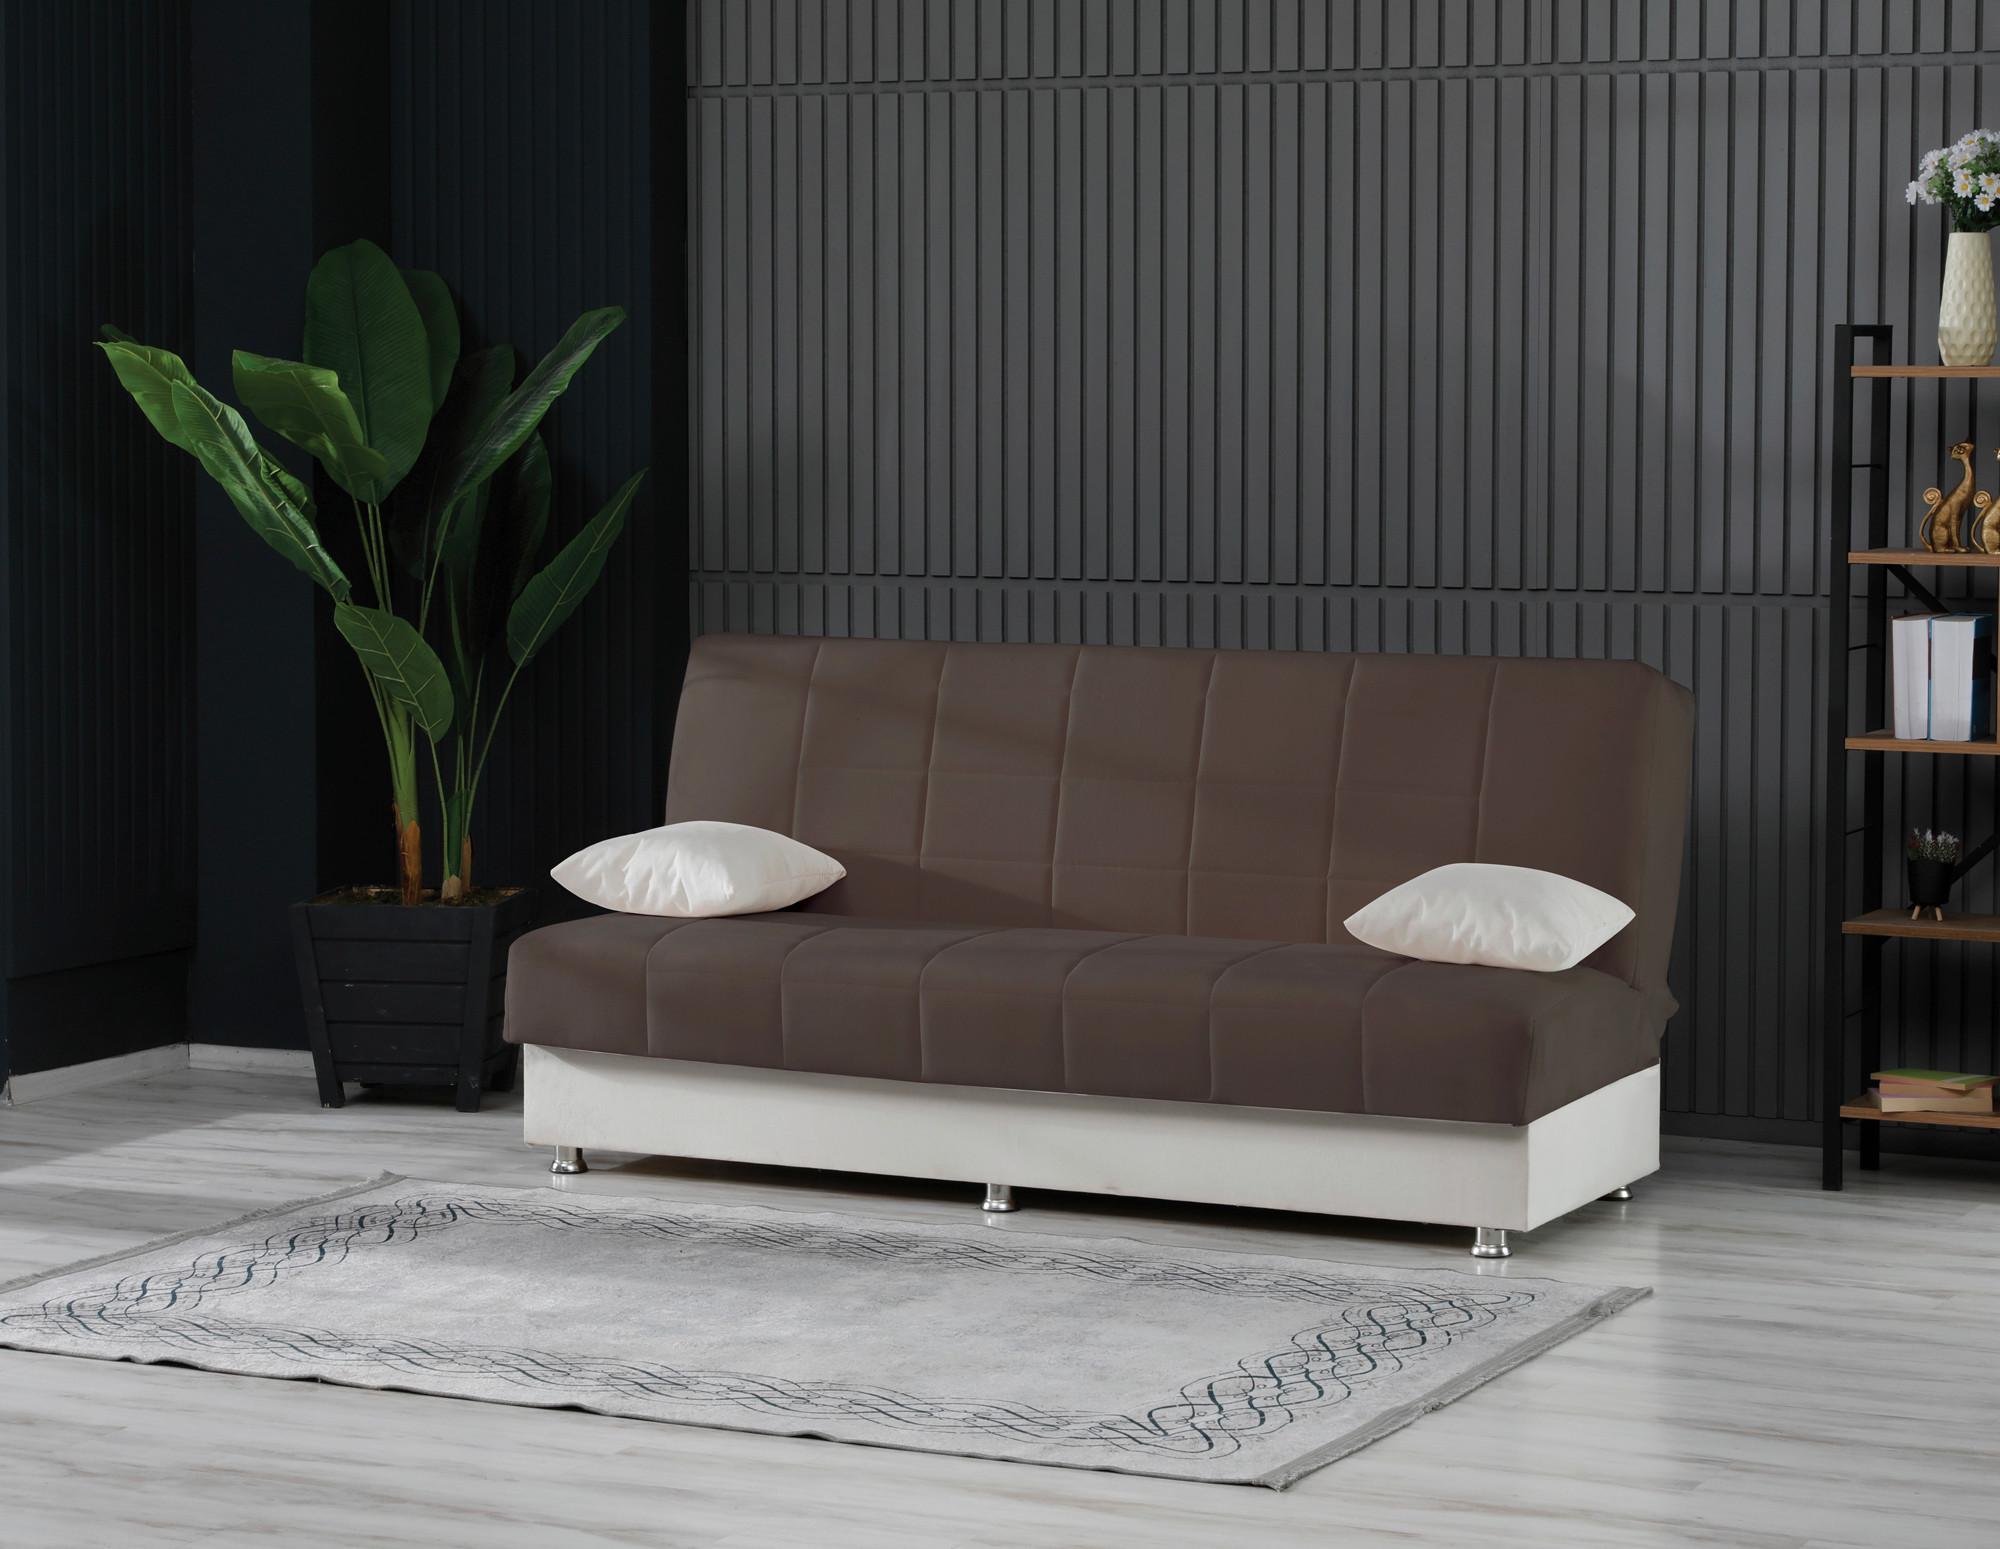 3-Sitzer-Sofa Chicago Mit Schlaffunktion Braun/Creme - Chromfarben/Creme, Design, Kunststoff/Textil (190/87/87cm) - Livetastic